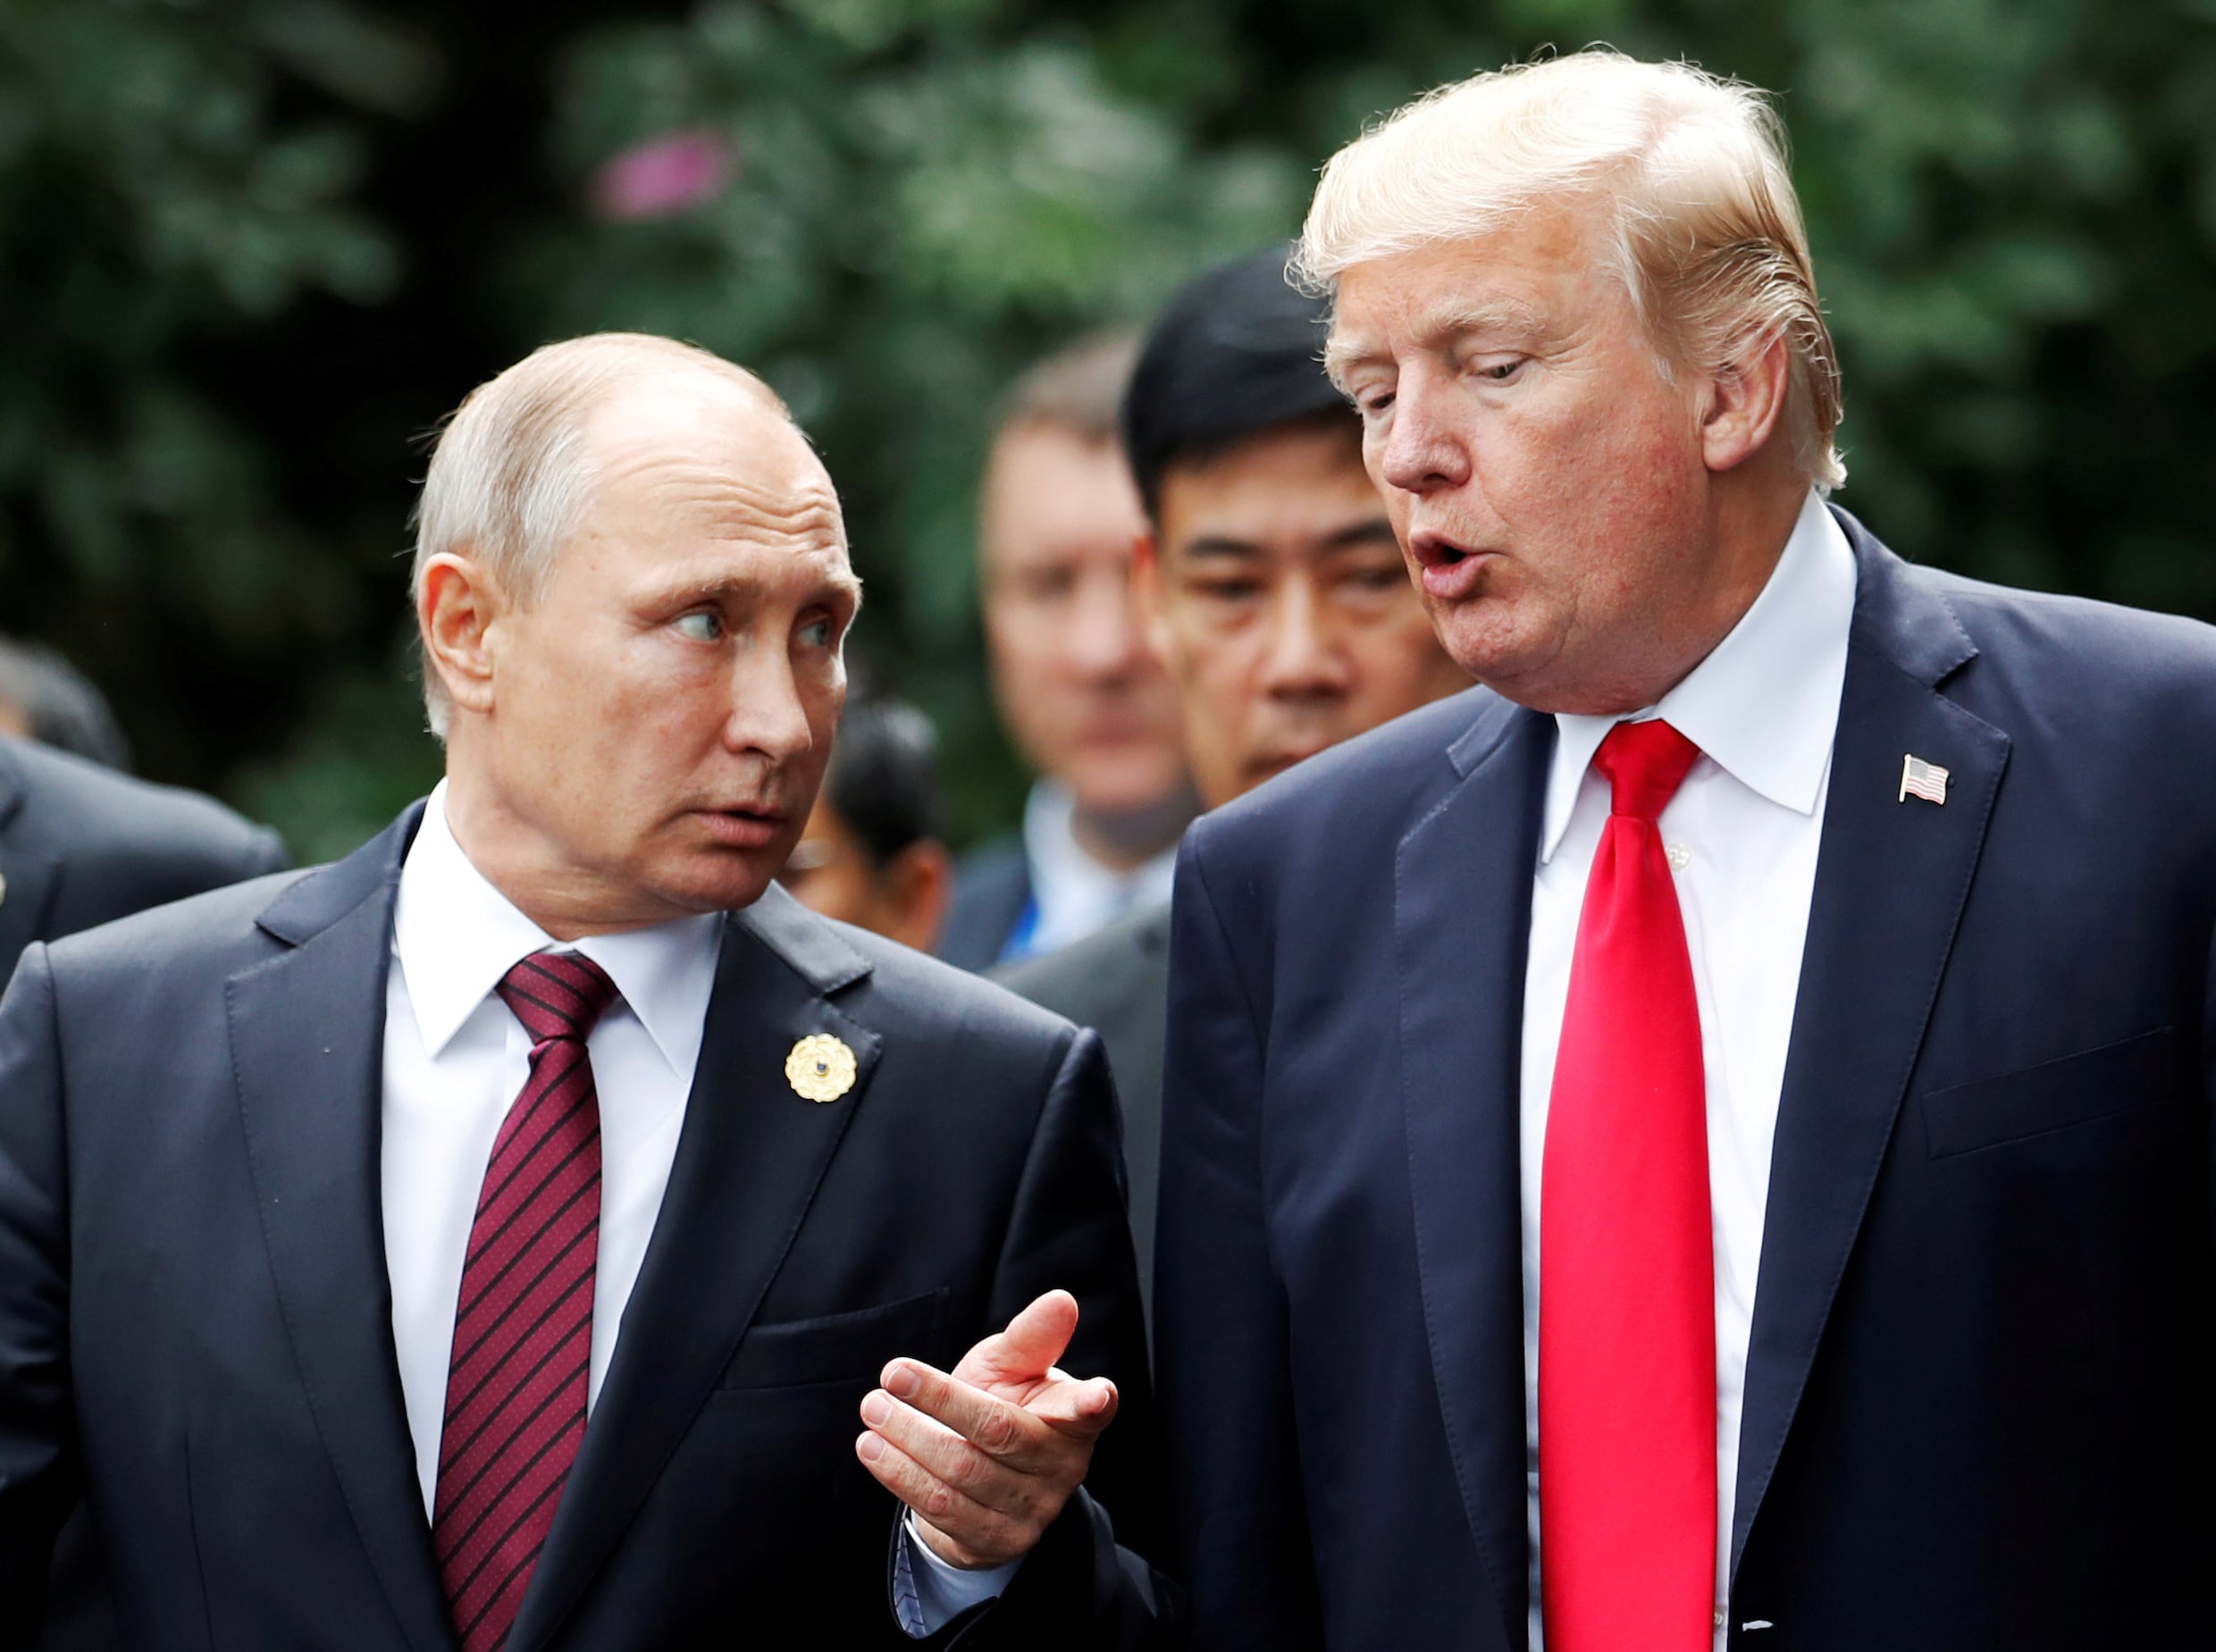 Trump "verwacht weinig" van top met Russische president Poetin